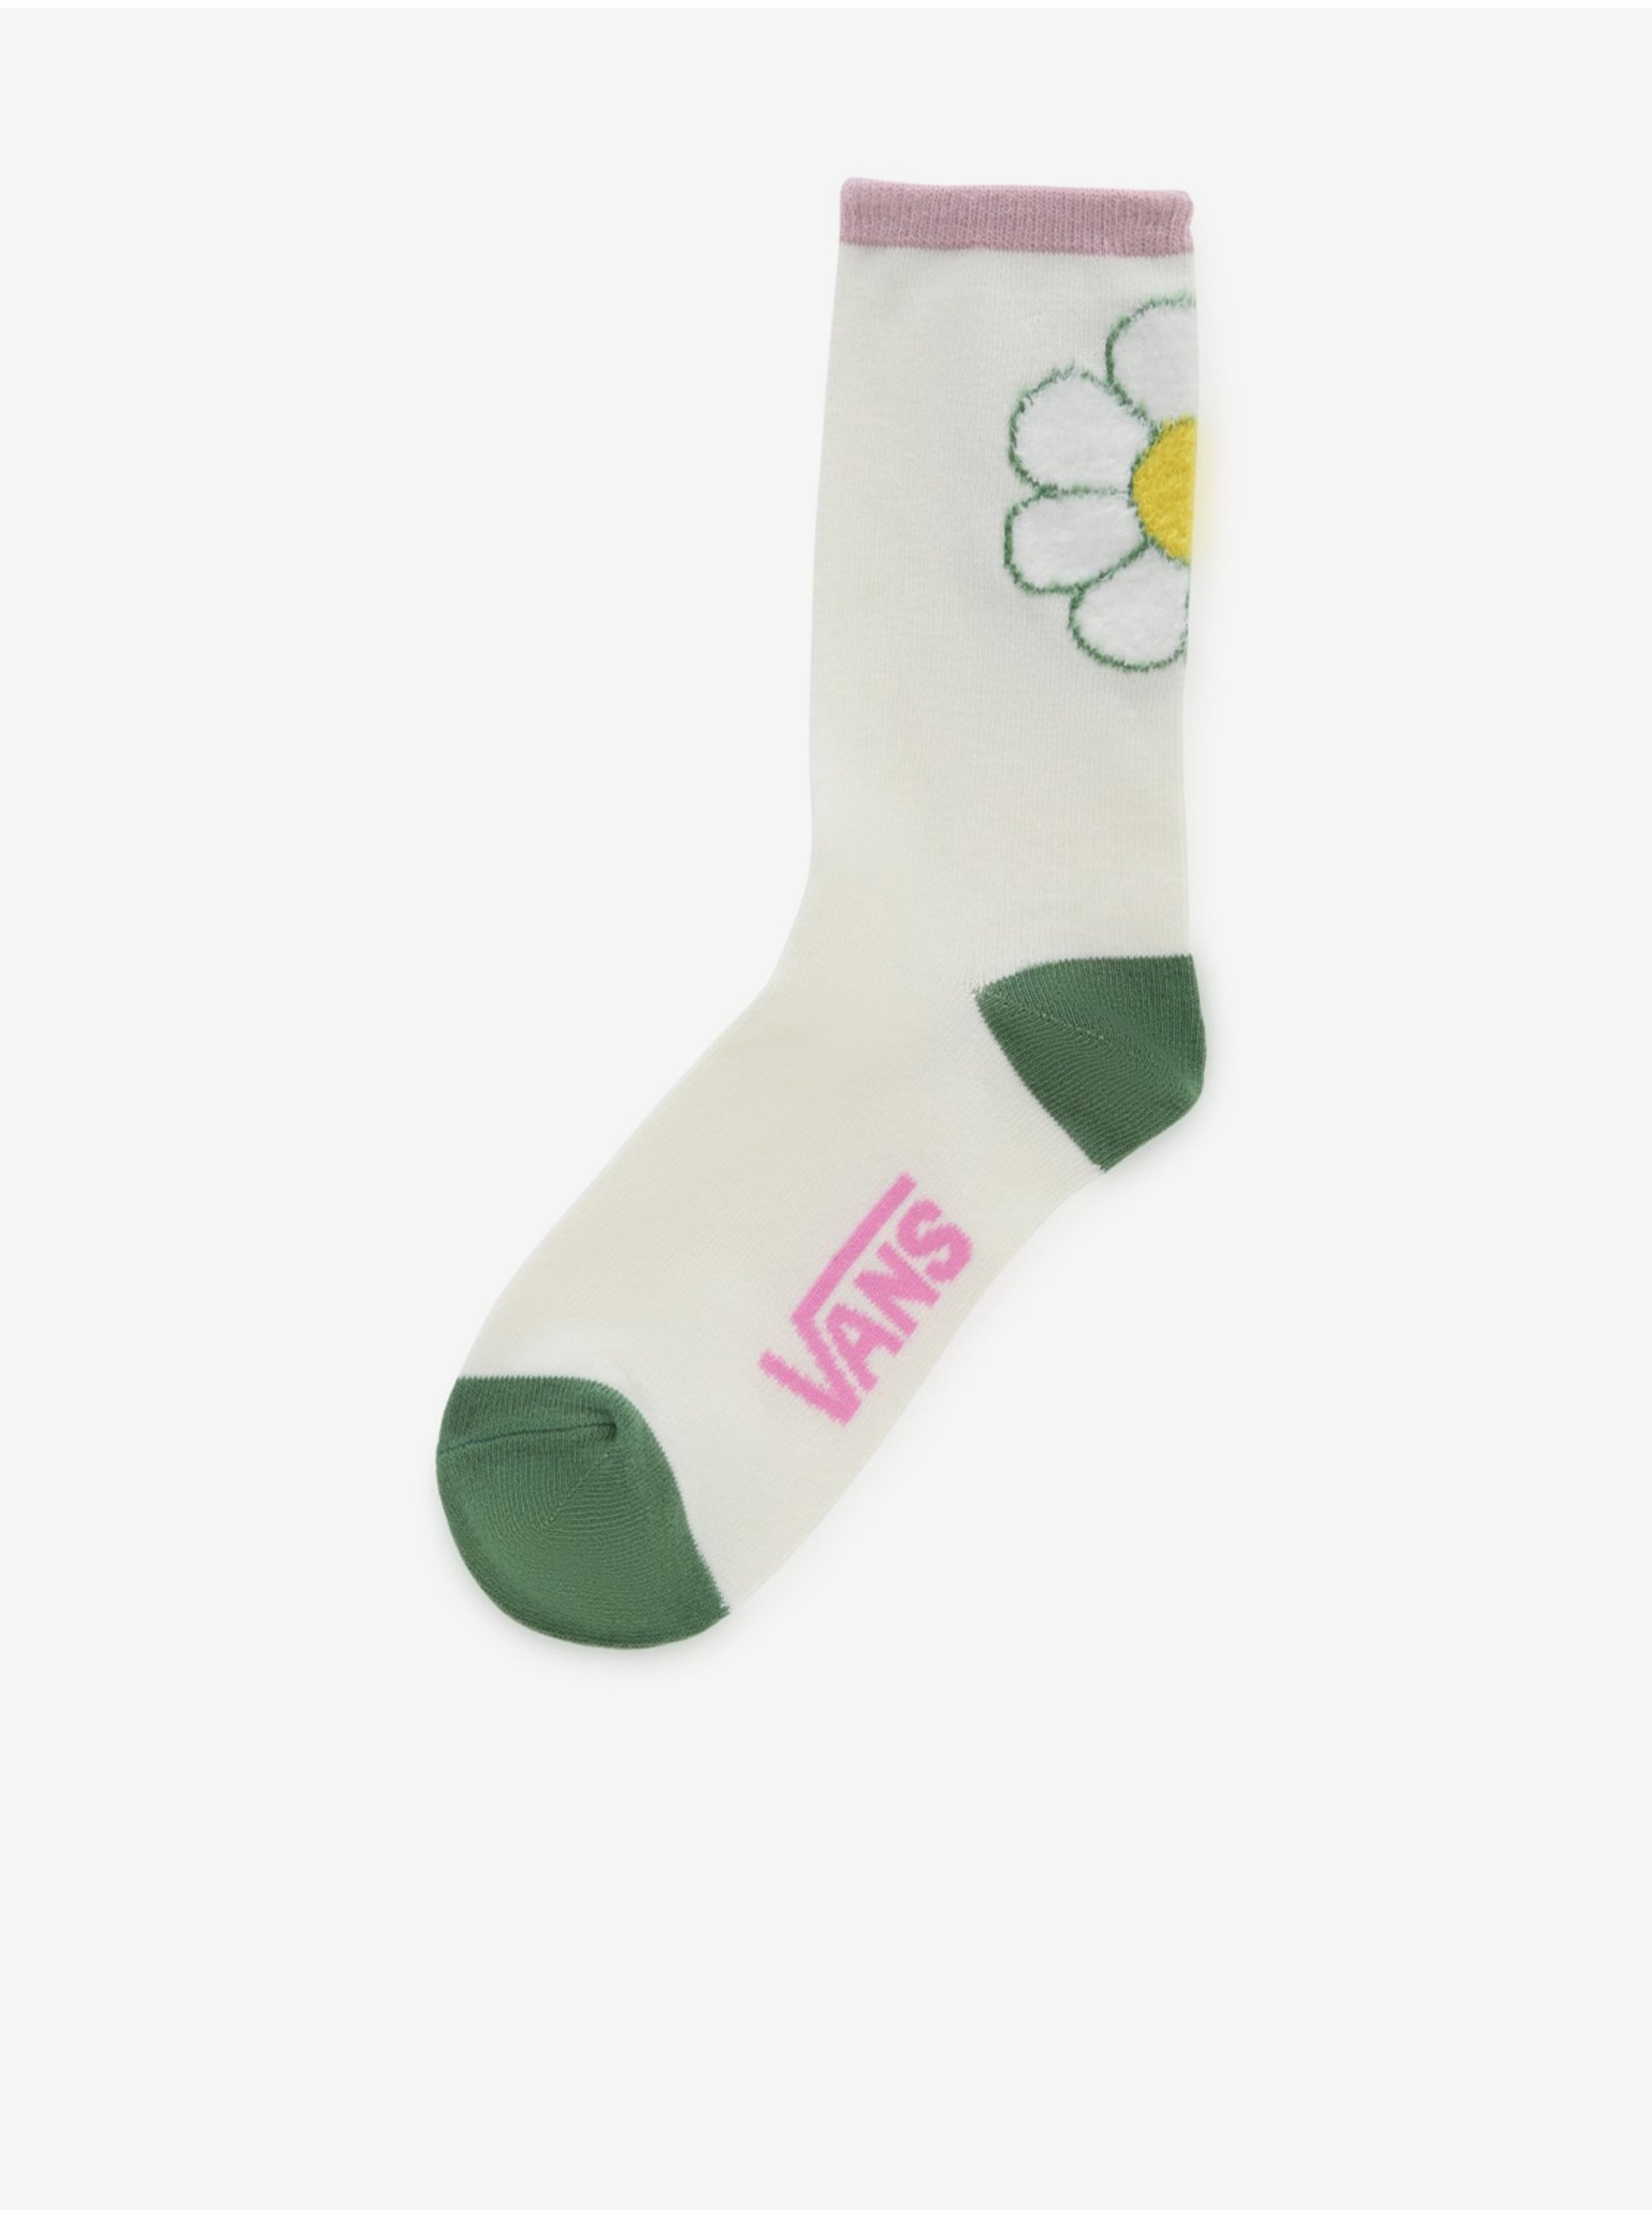 Lacno Ponožky pre ženy VANS - krémová, zelená, ružová